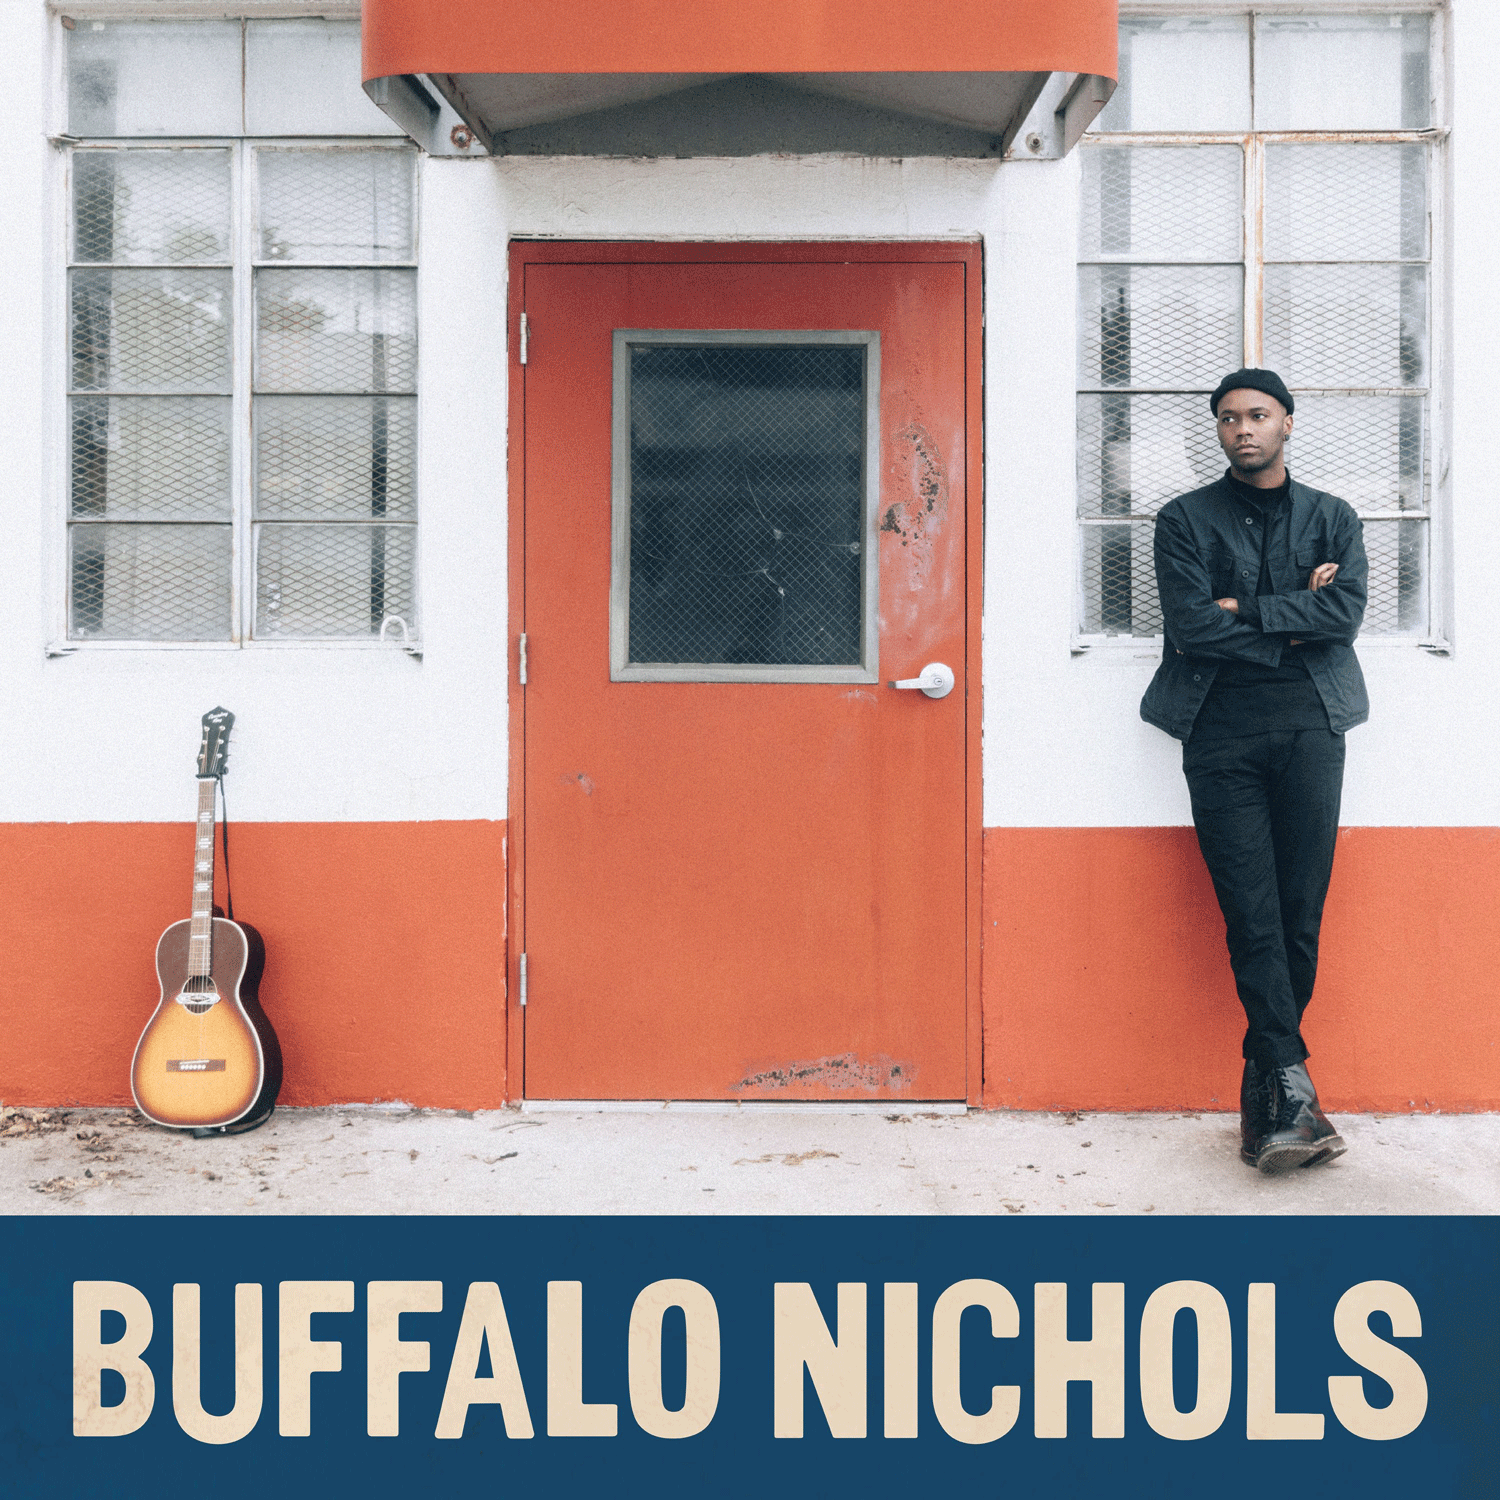 Buffalo Nichols leaning against a wall